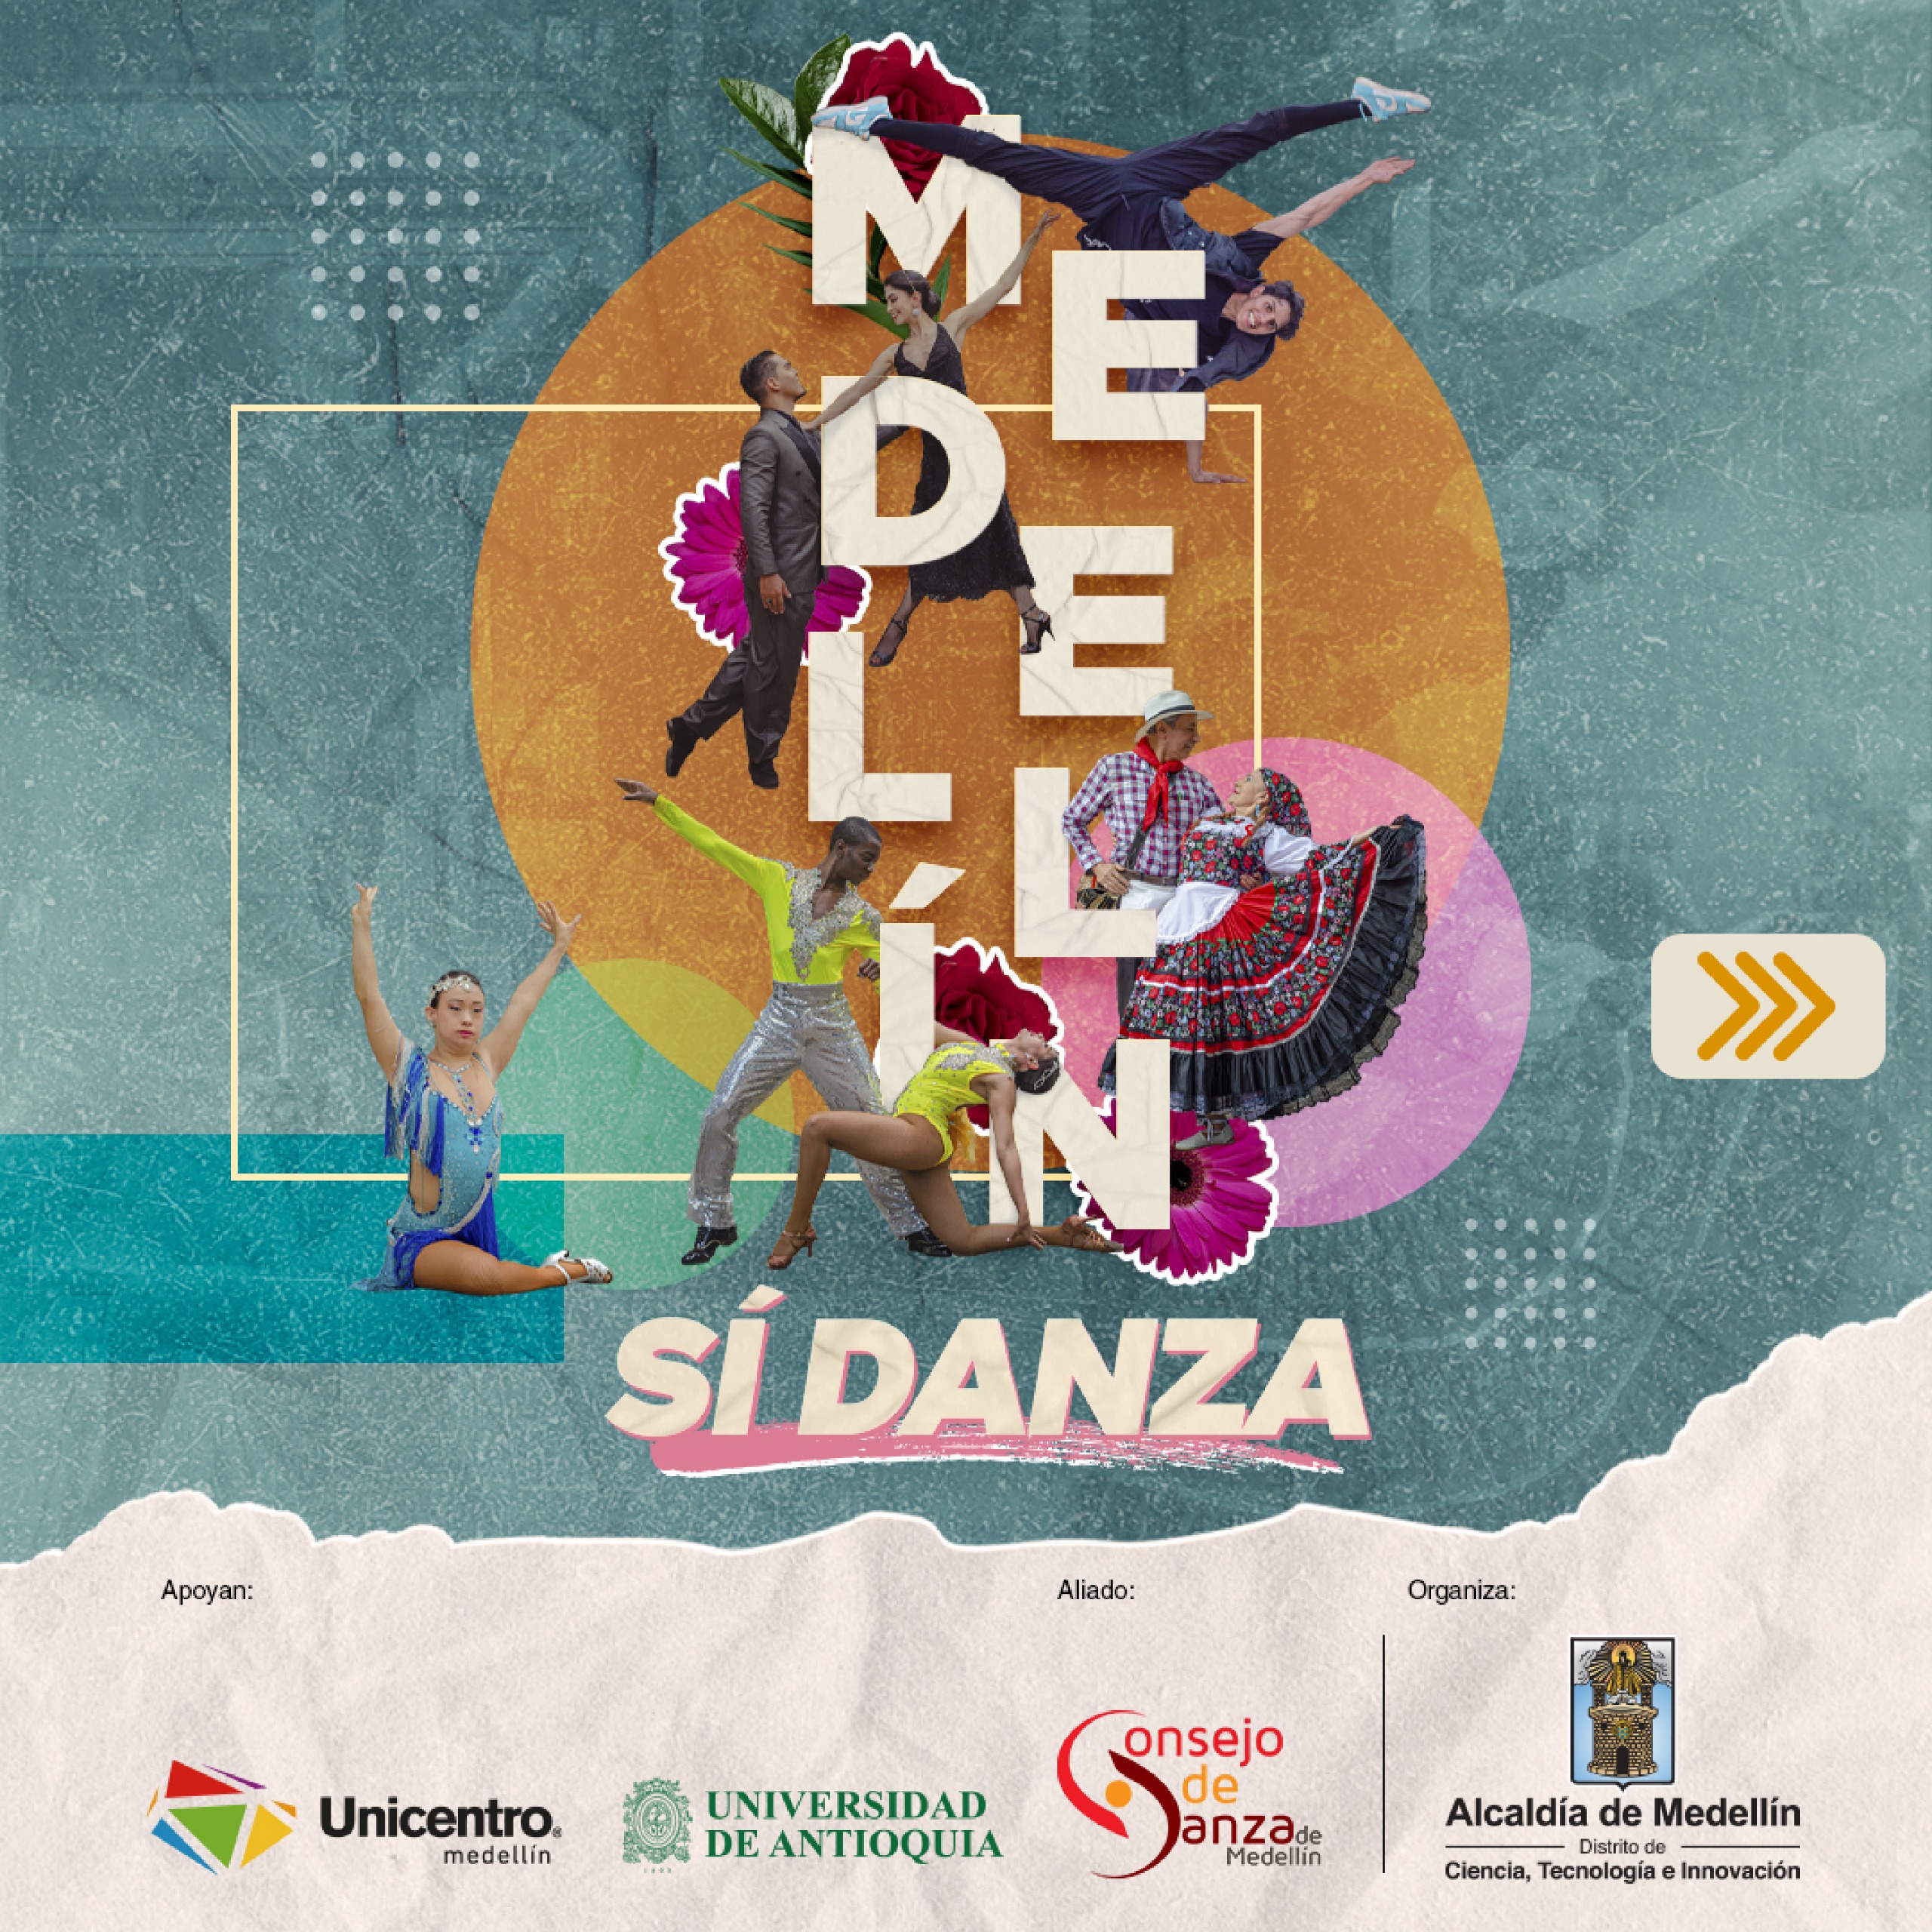 Medellin Sí Danza